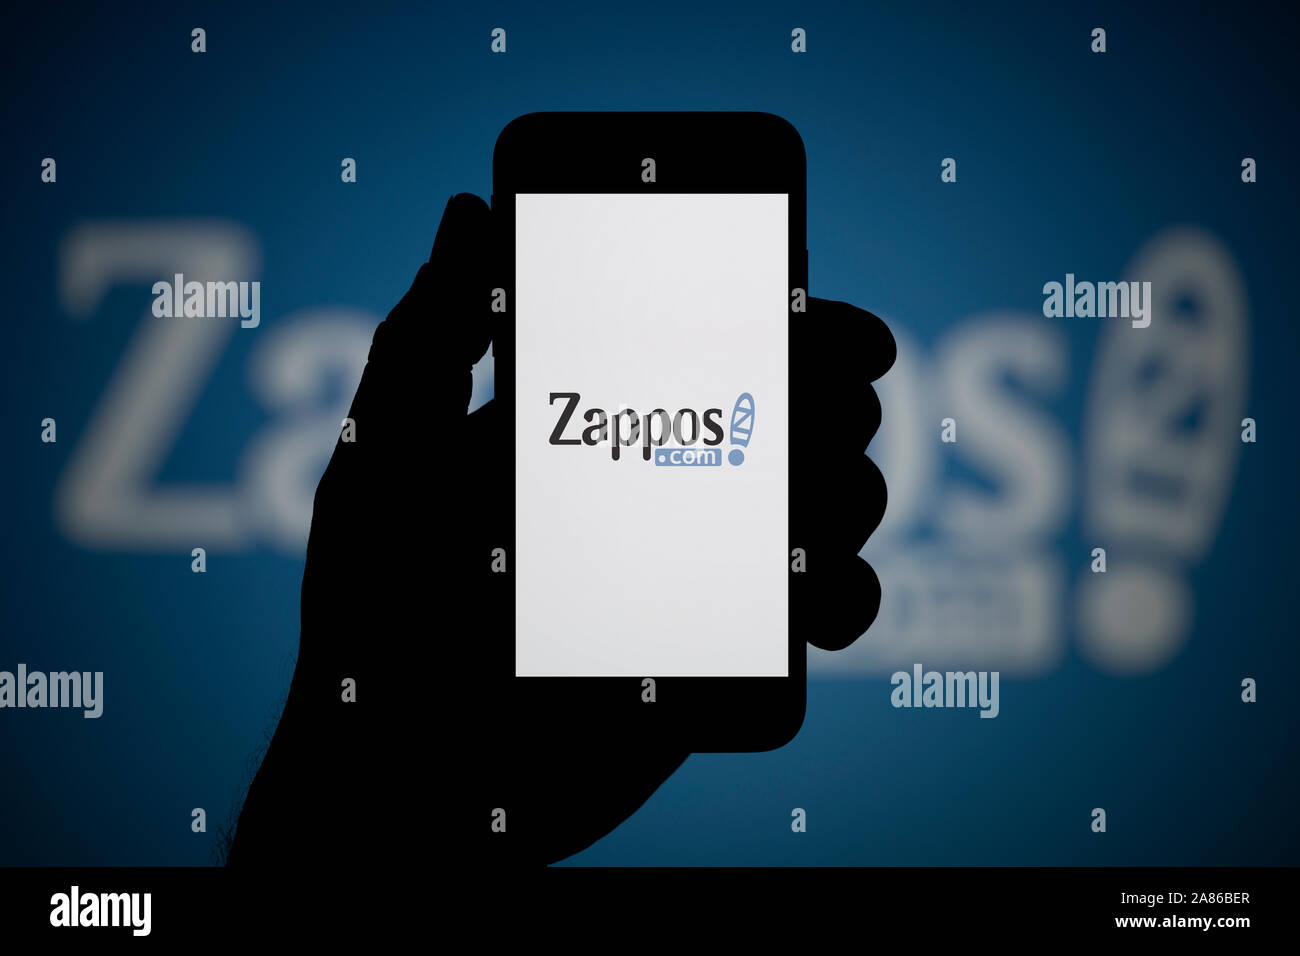 Un uomo guarda al suo iPhone che visualizza il logo Zappos, con lo stesso logo in background (solo uso editoriale). Foto Stock